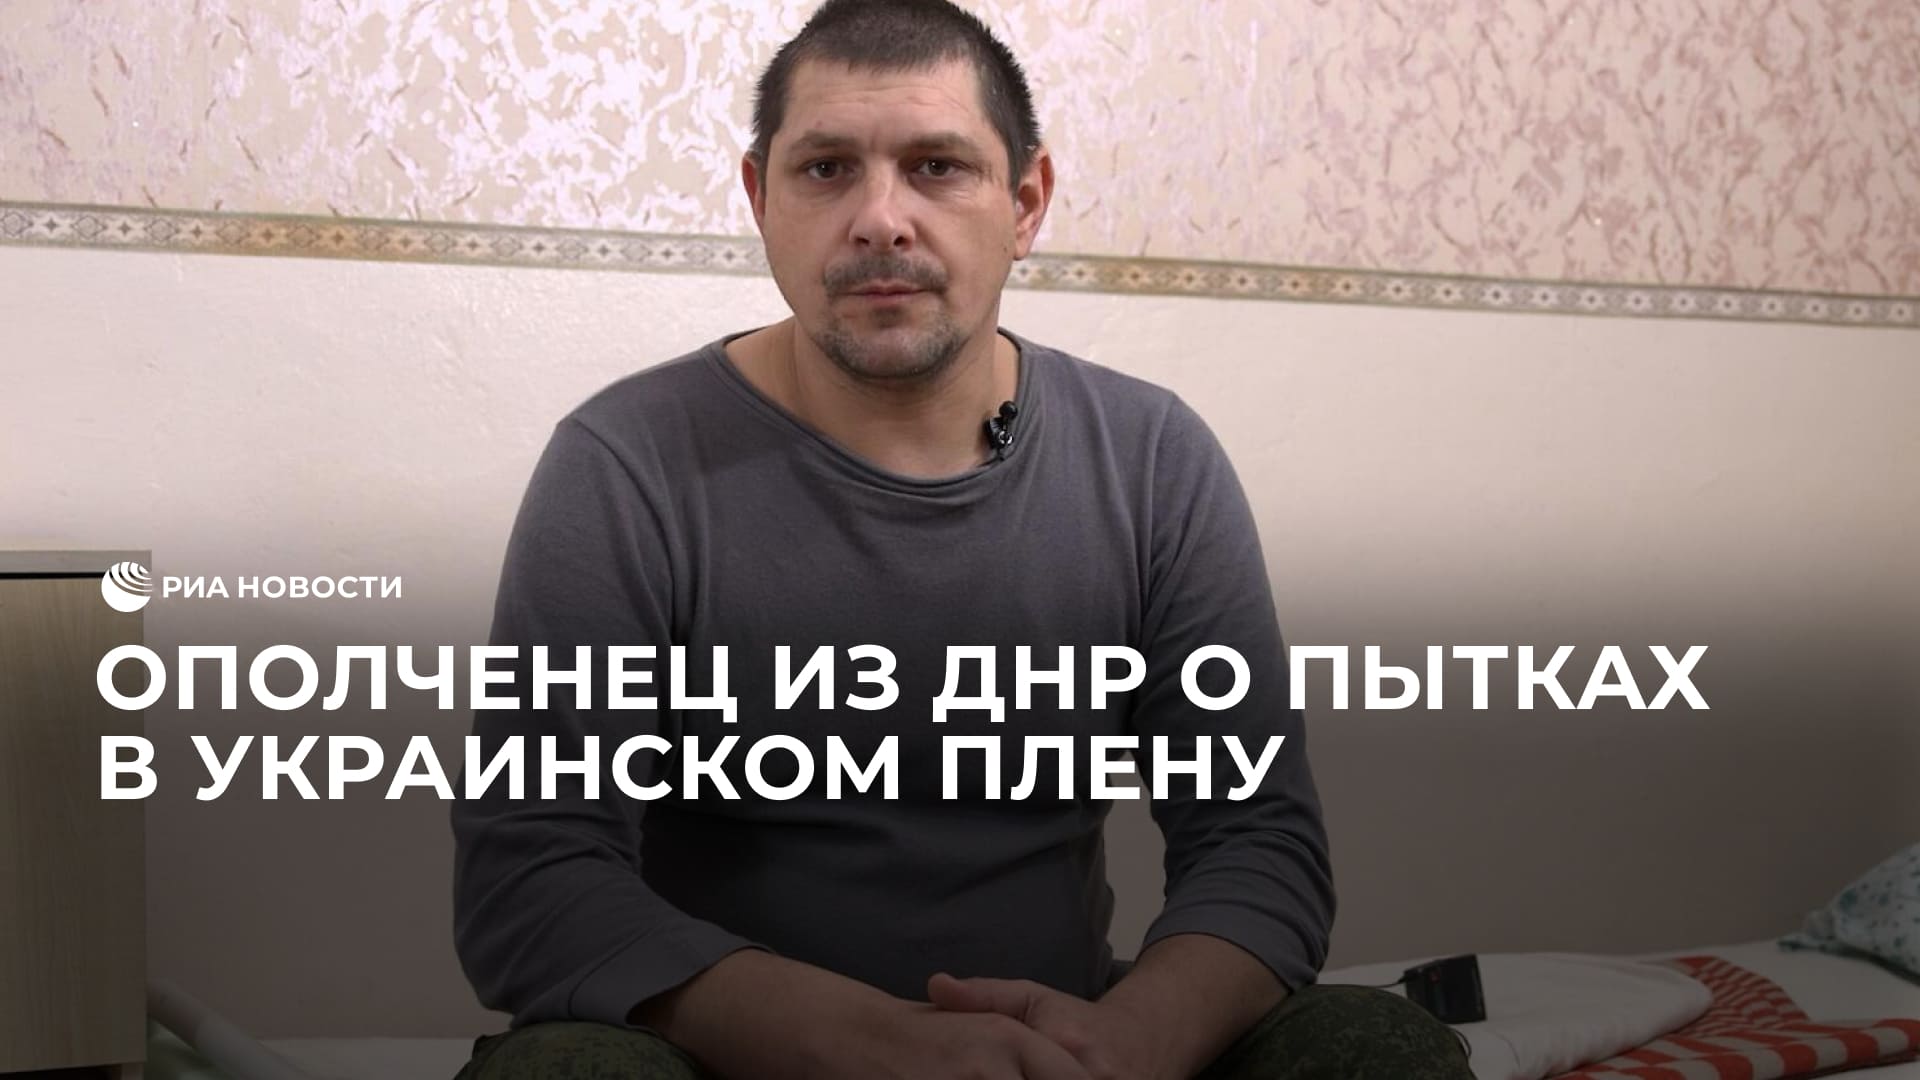 Ополченец из ДНР о пытках в украинском плену